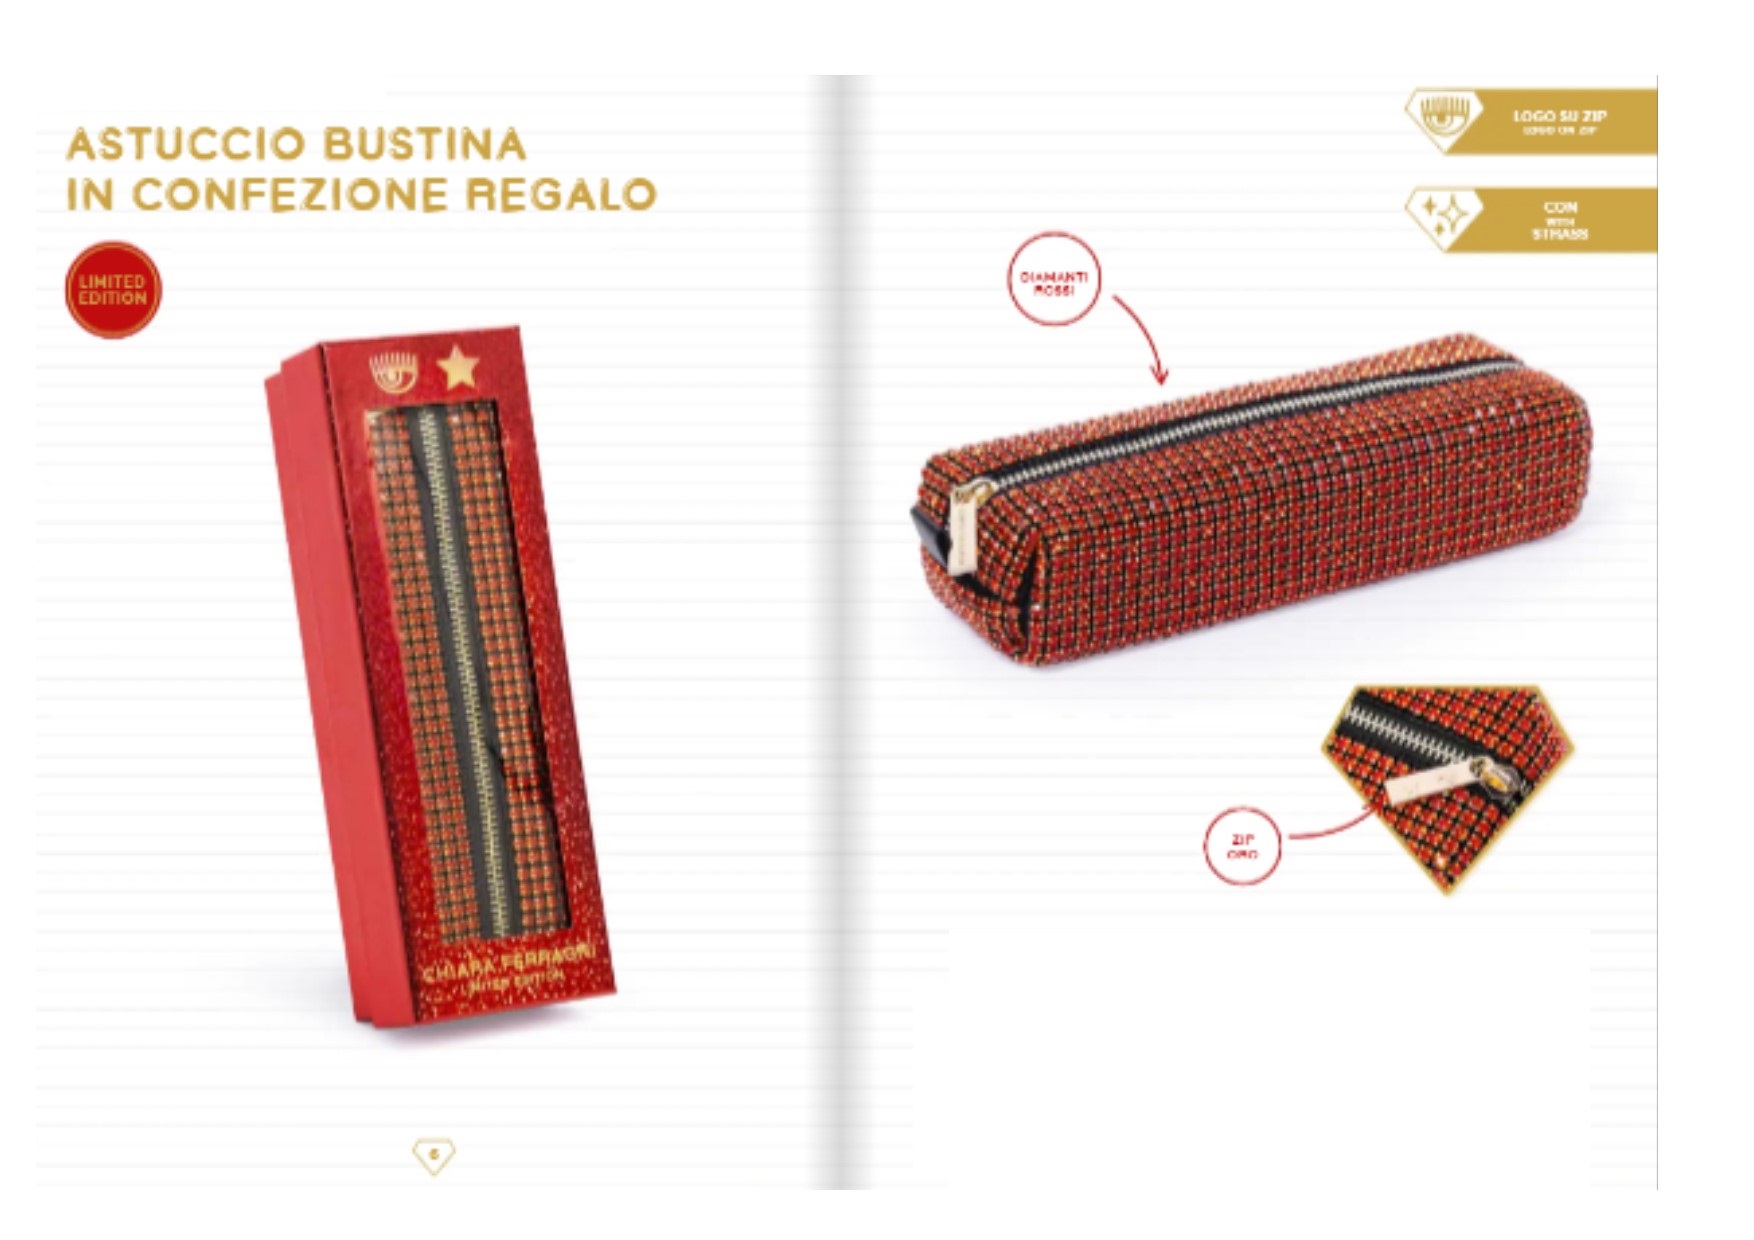 Astuccio rosso chiara ferragni 2023 limited edition